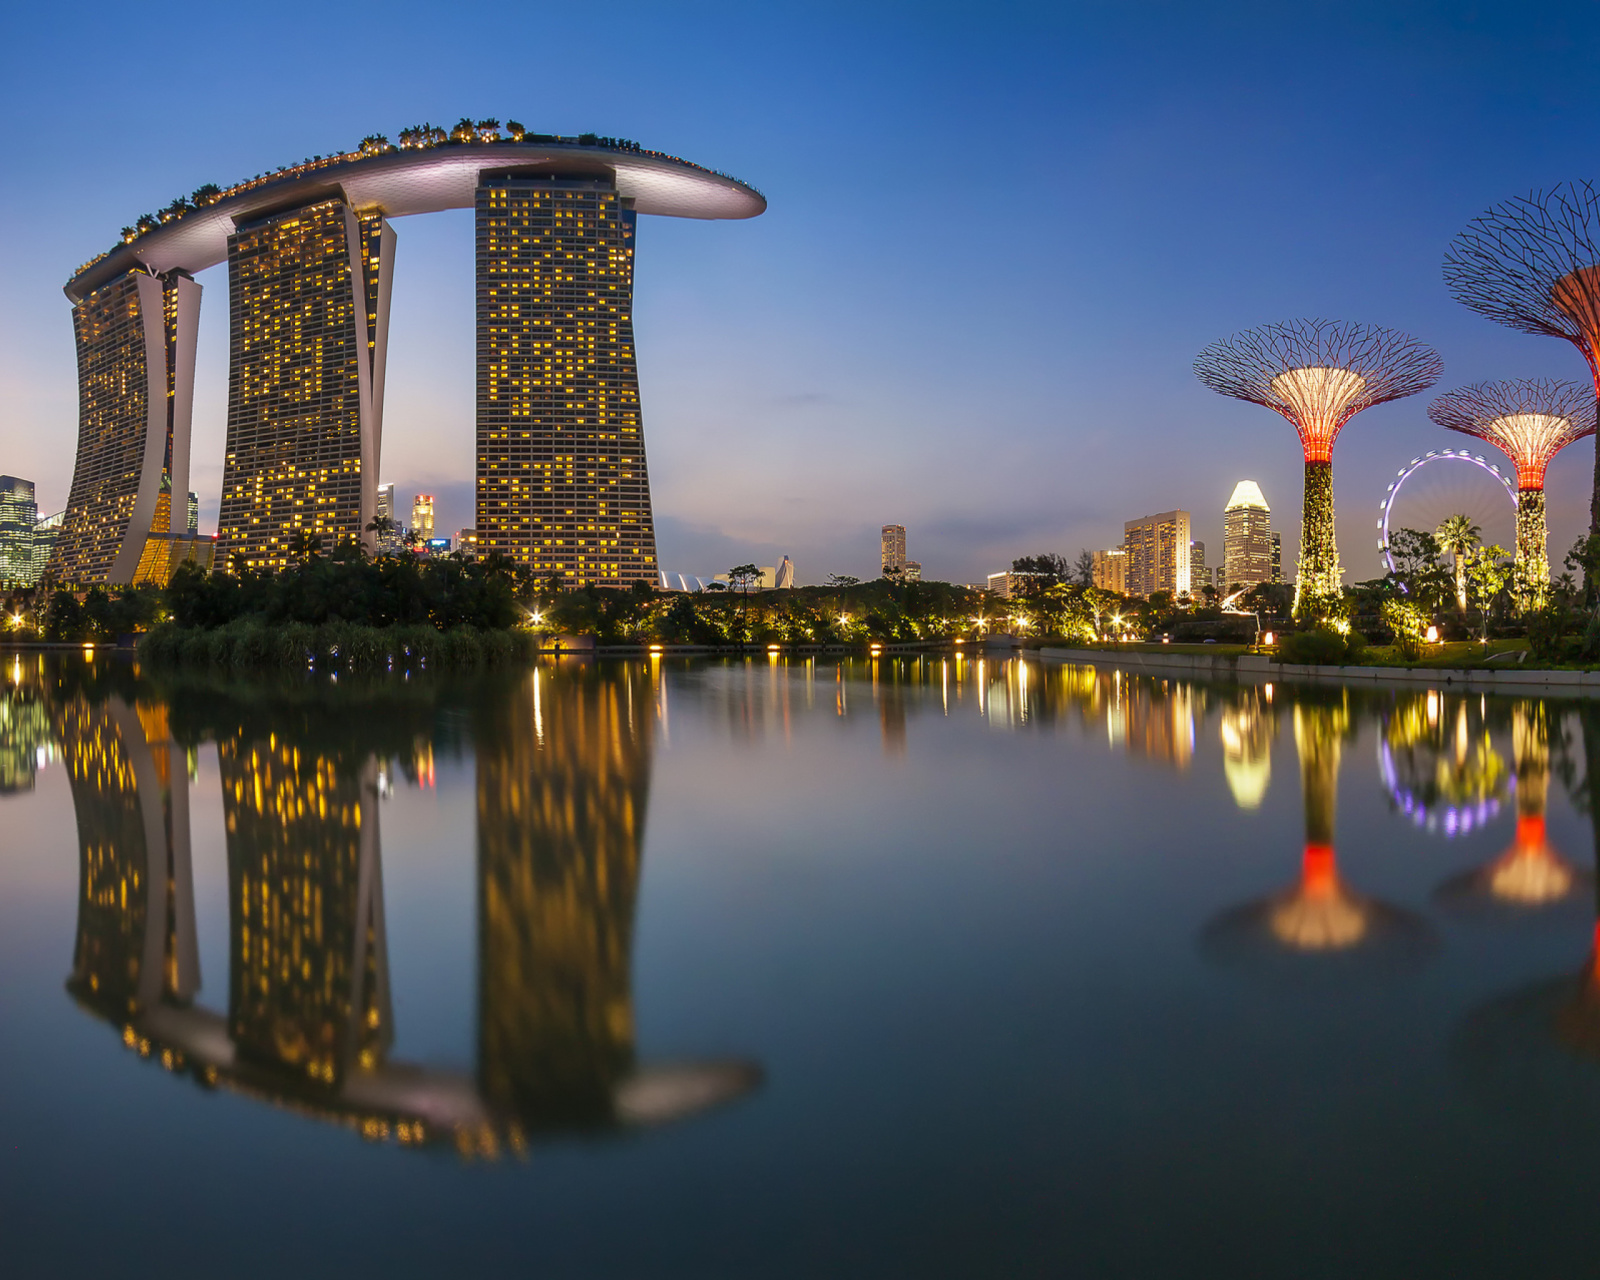 Обои Singapore Marina Bay Sands Tower 1600x1280